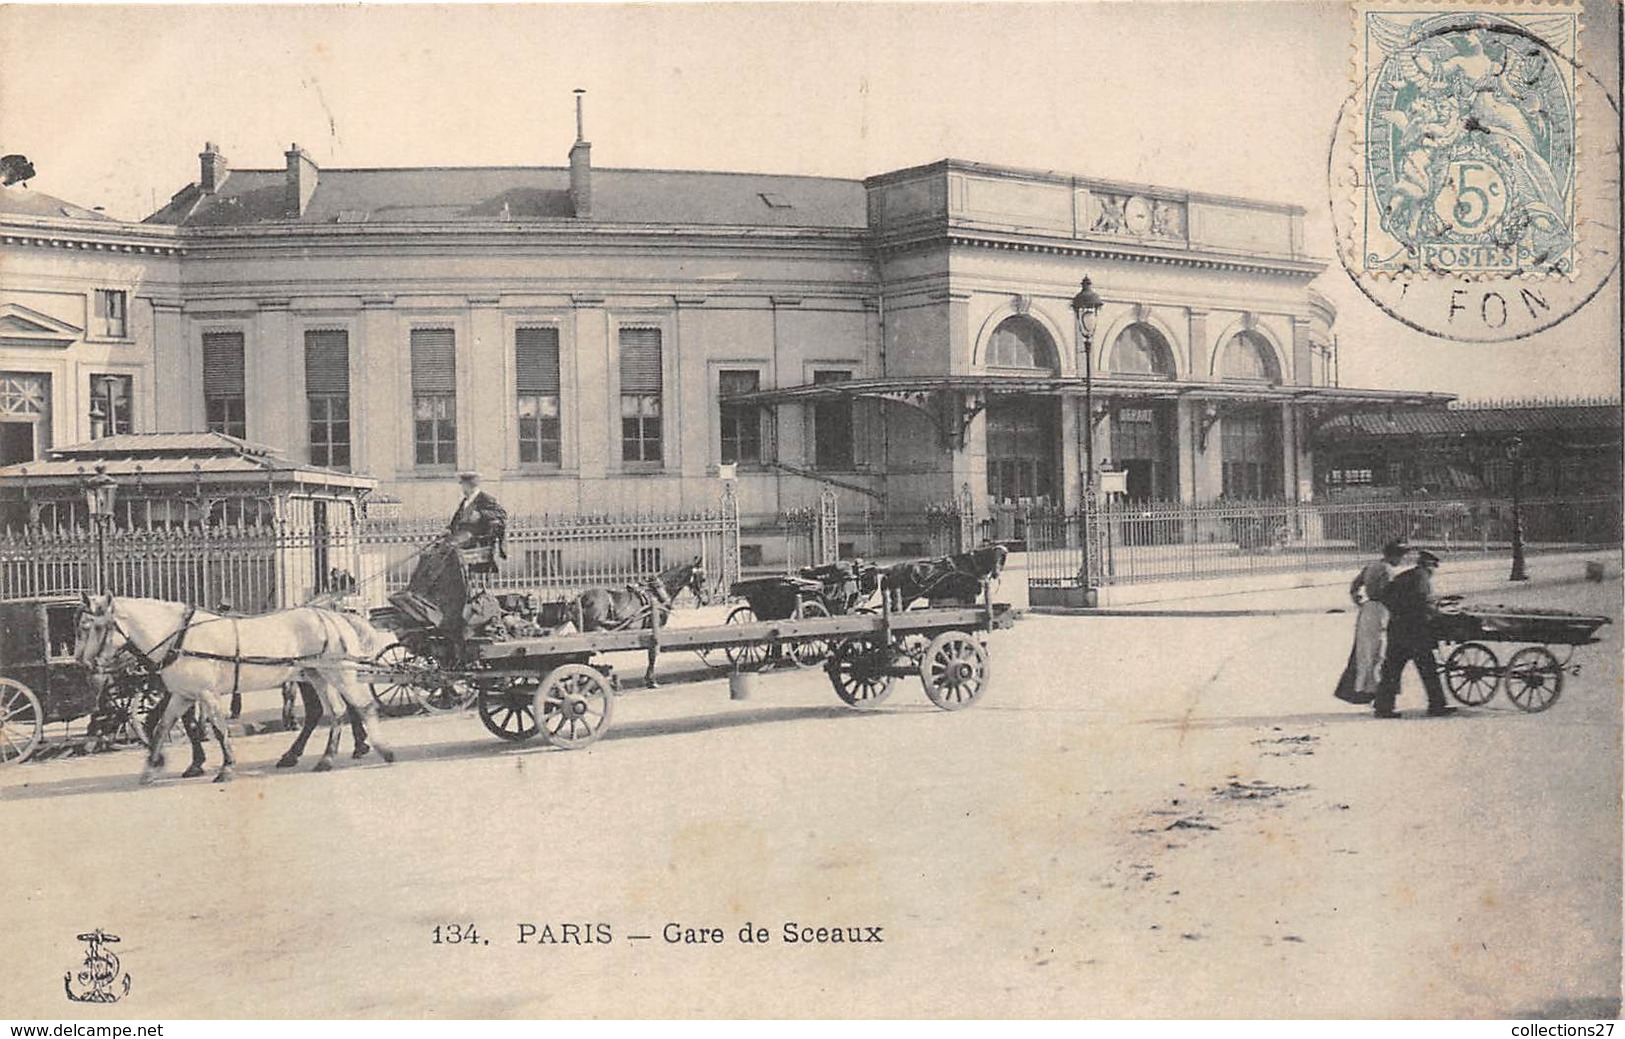 PARIS- GARE DE SCEAUX - Pariser Métro, Bahnhöfe